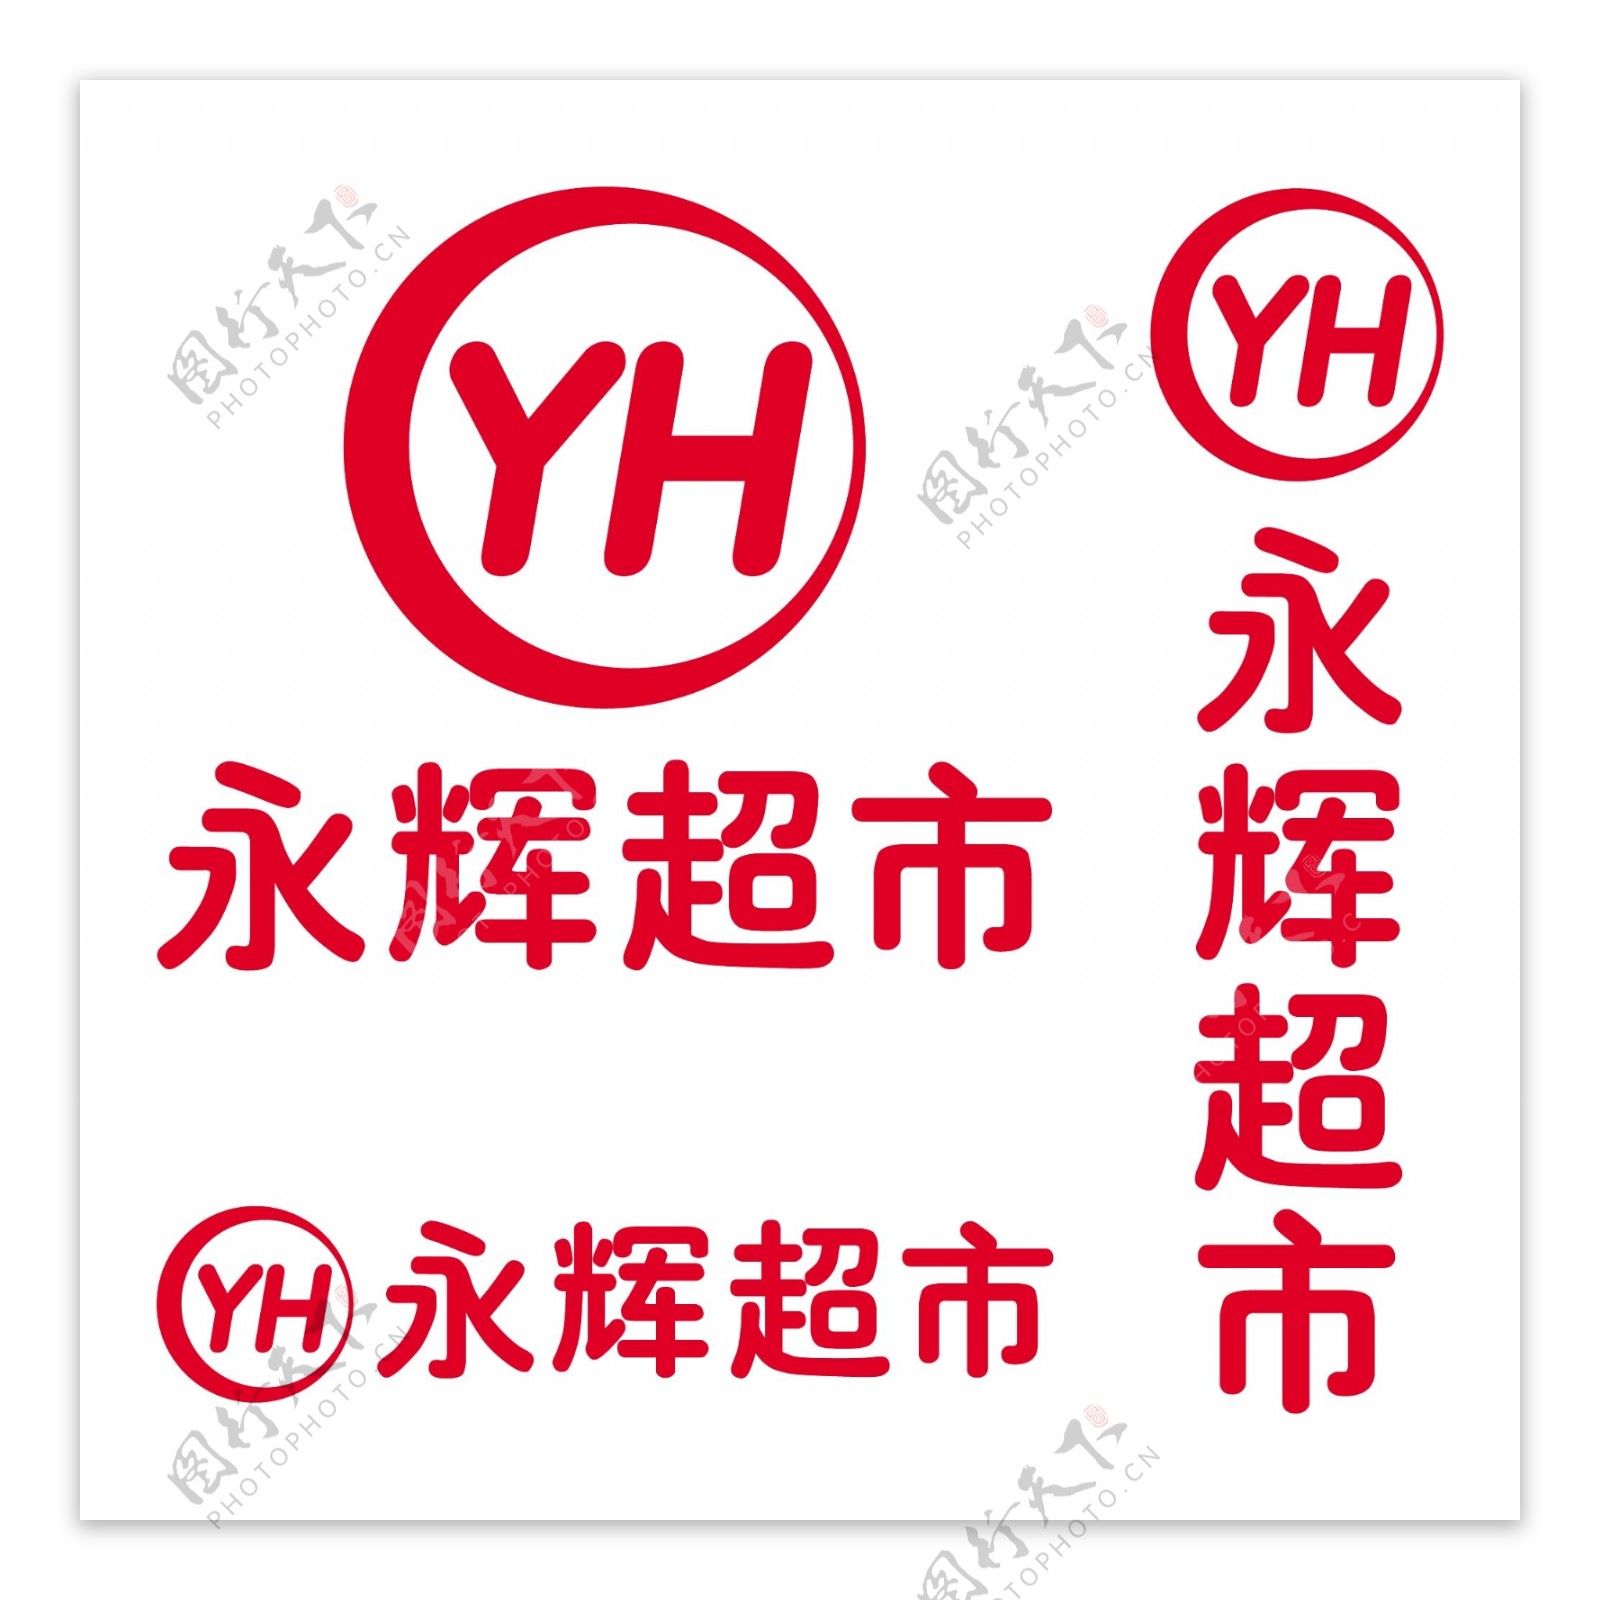 永辉超市logo